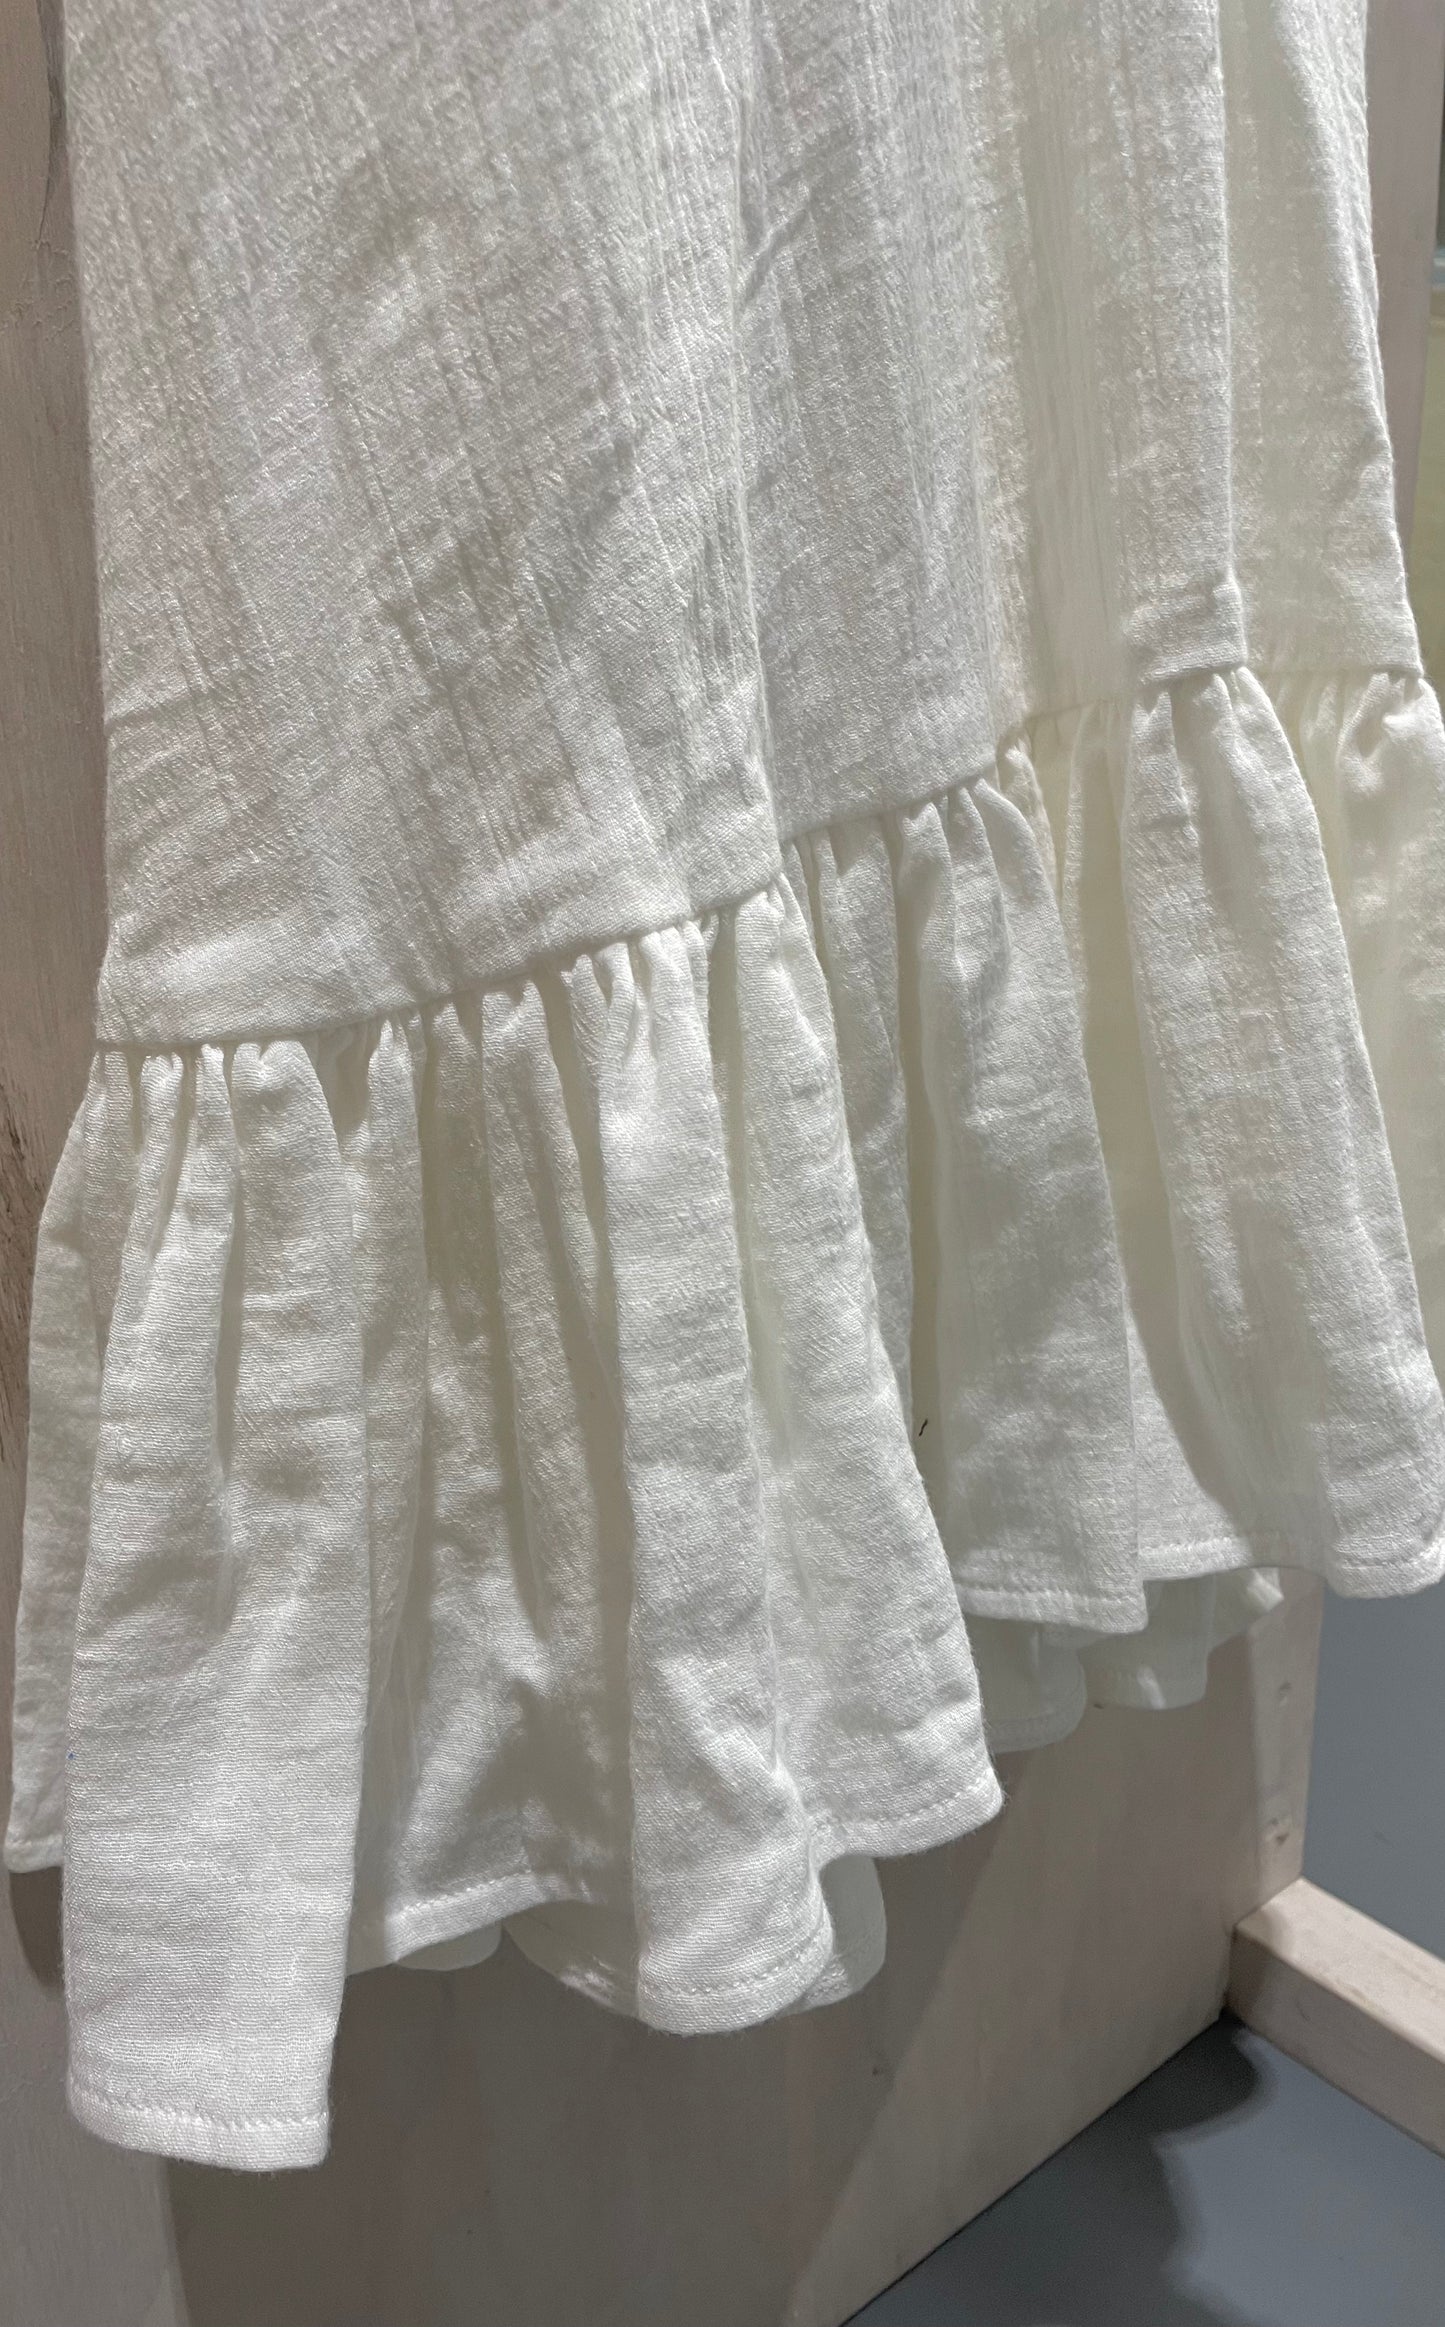 Wrap Dress - Cotton (SIZE 10)